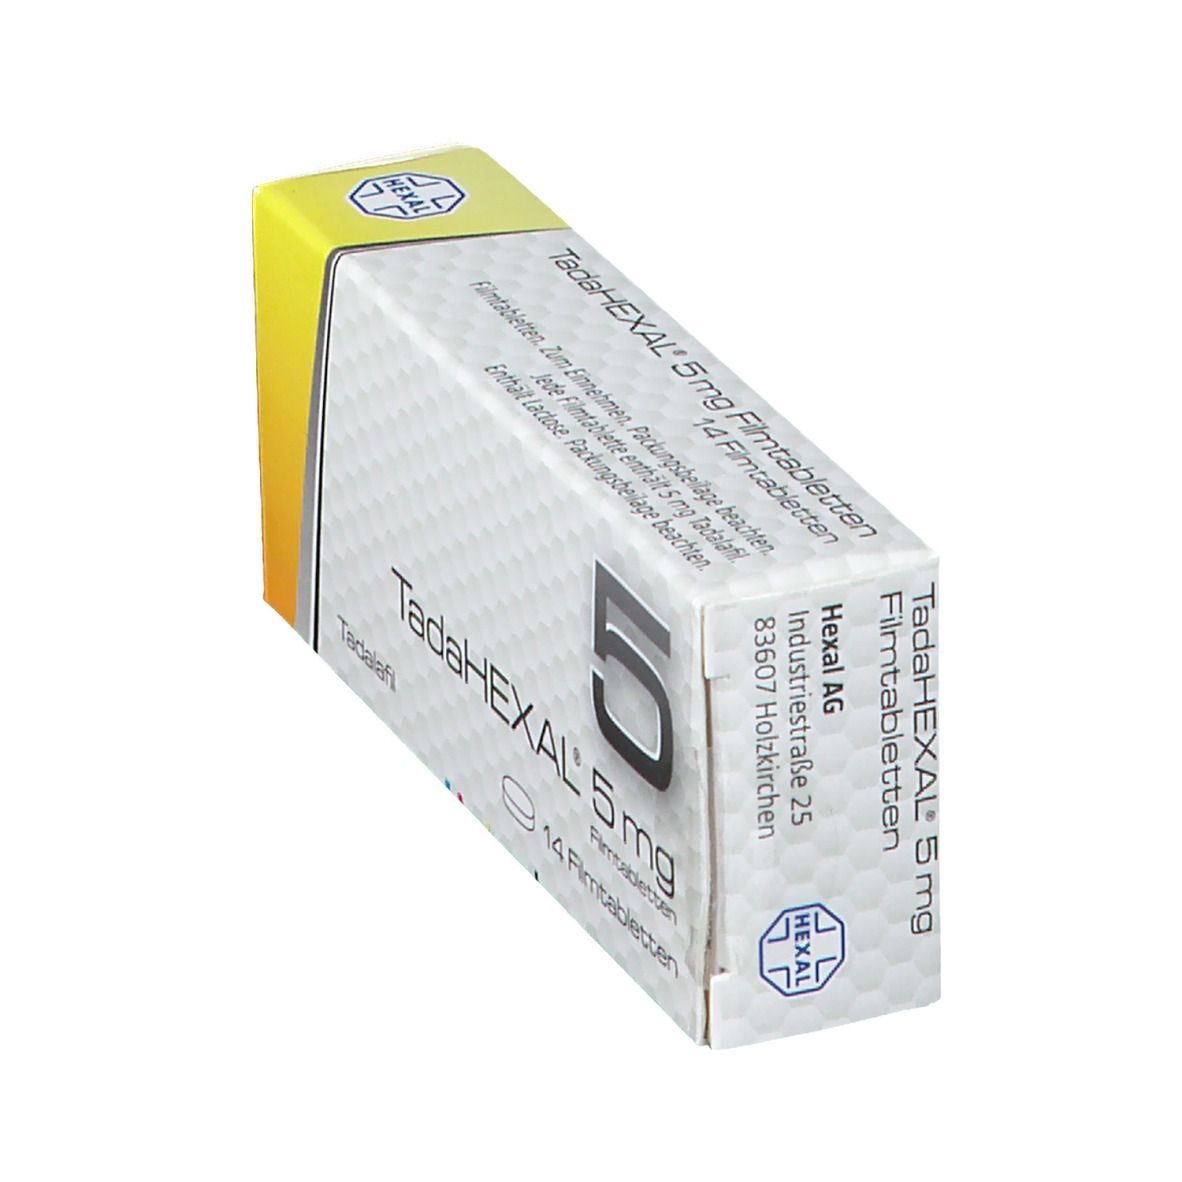 TadaHEXAL® 5 mg